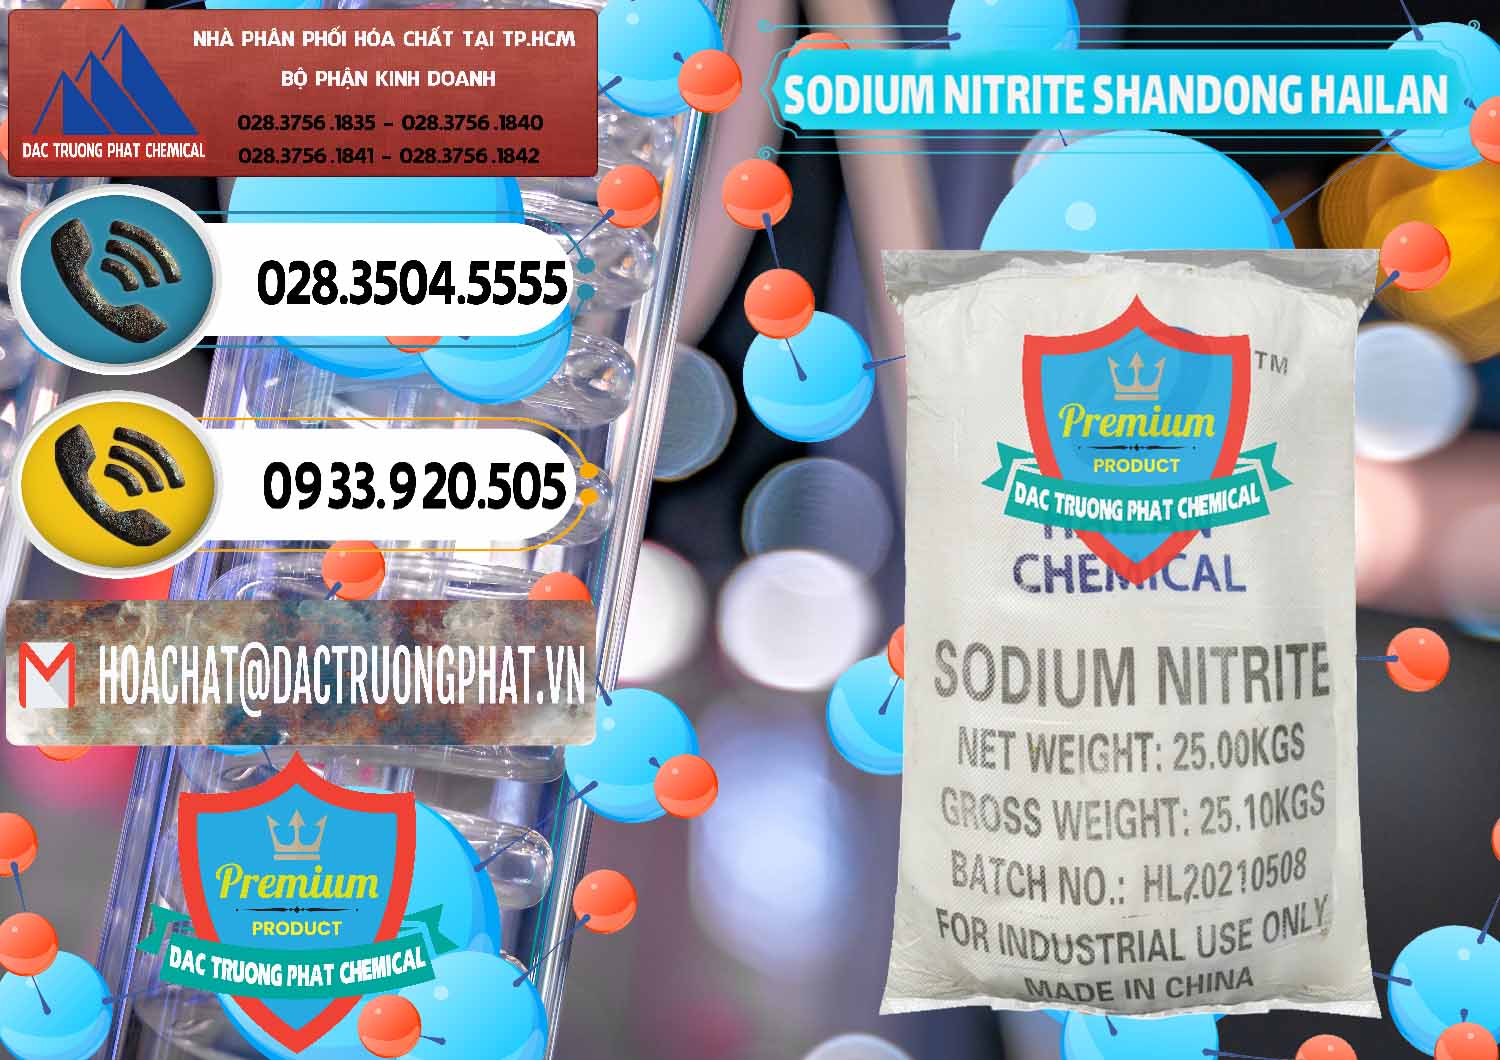 Chuyên bán & cung cấp Sodium Nitrite - NANO2 99.3% Shandong Hailan Trung Quốc China - 0284 - Nhà cung cấp - nhập khẩu hóa chất tại TP.HCM - hoachatdetnhuom.vn